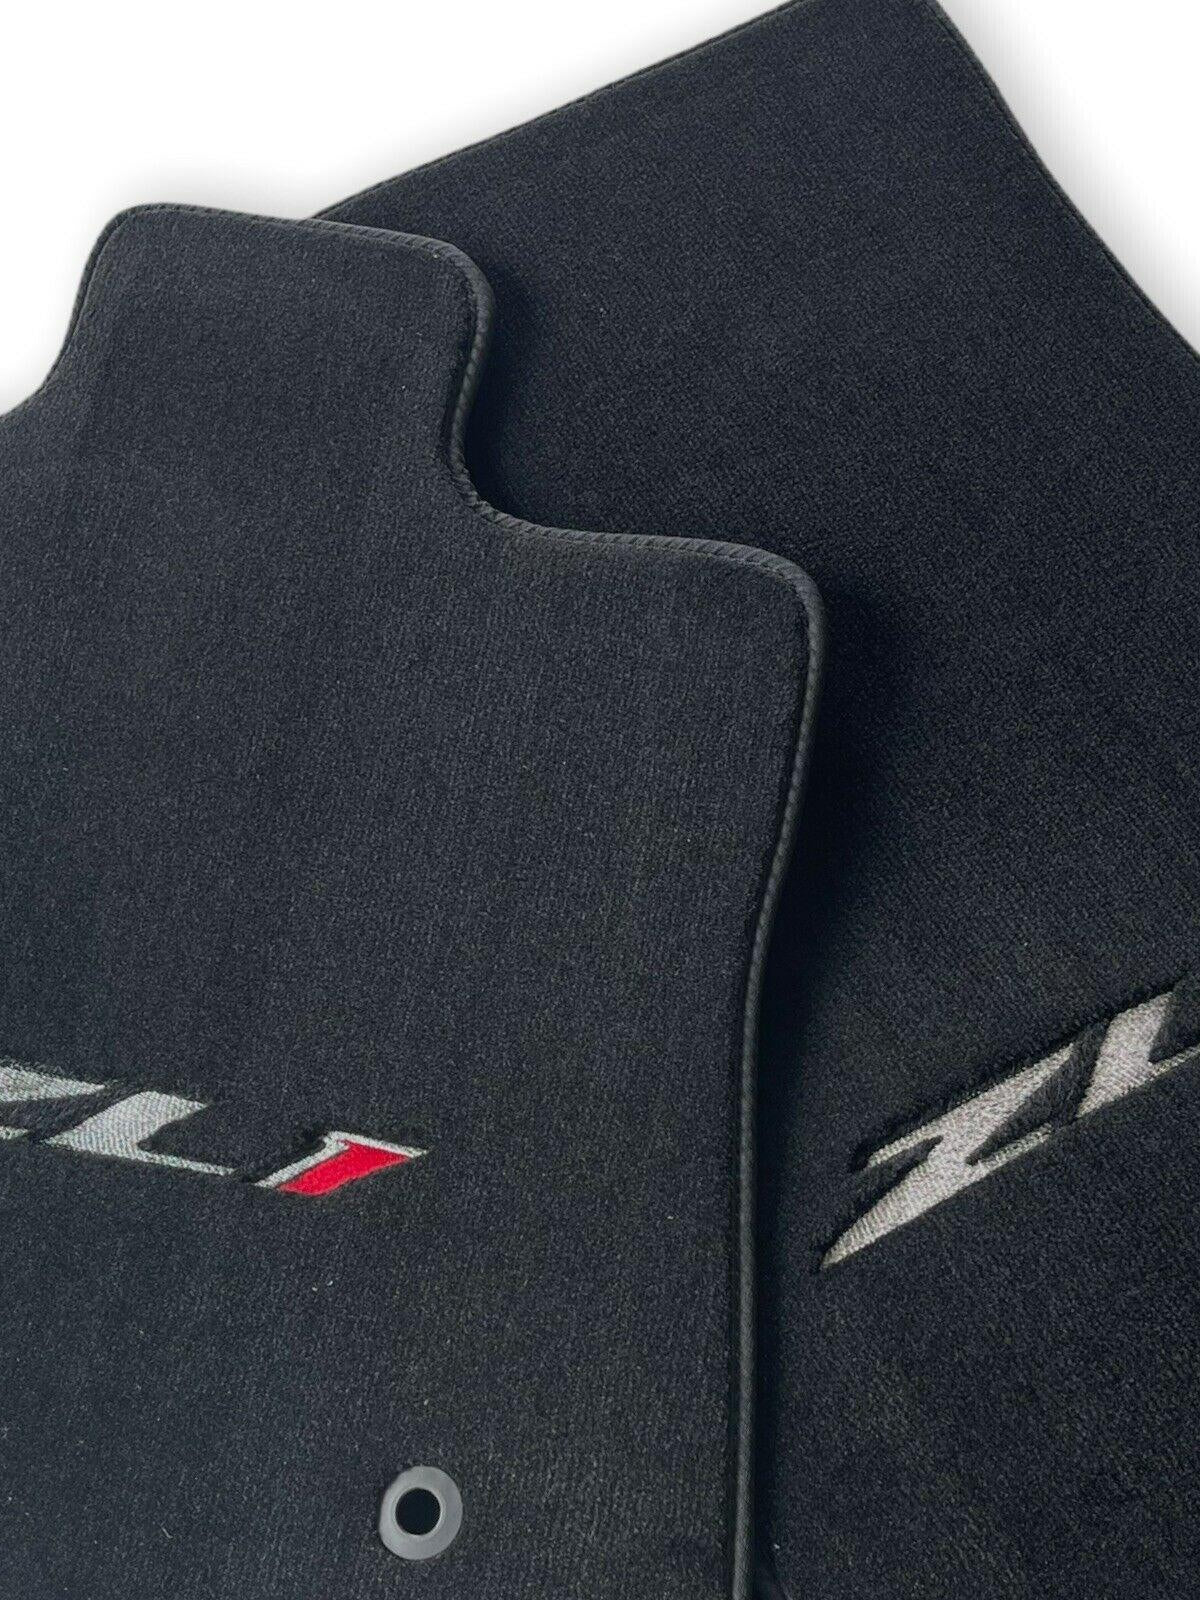 Floor Mats For Chevrolet Camaro ZL1 - AutoWin